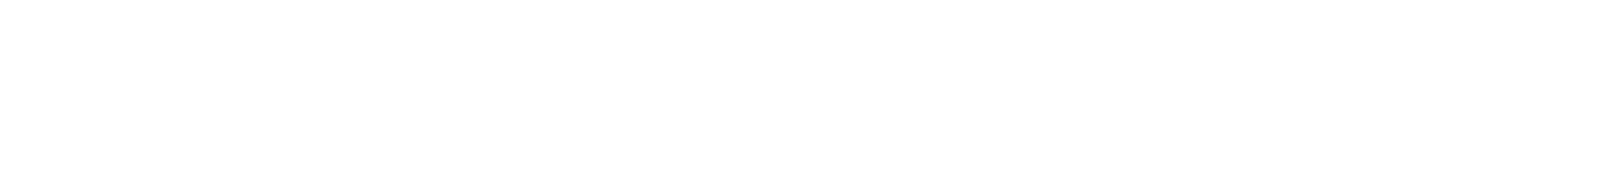 Logo Morrison